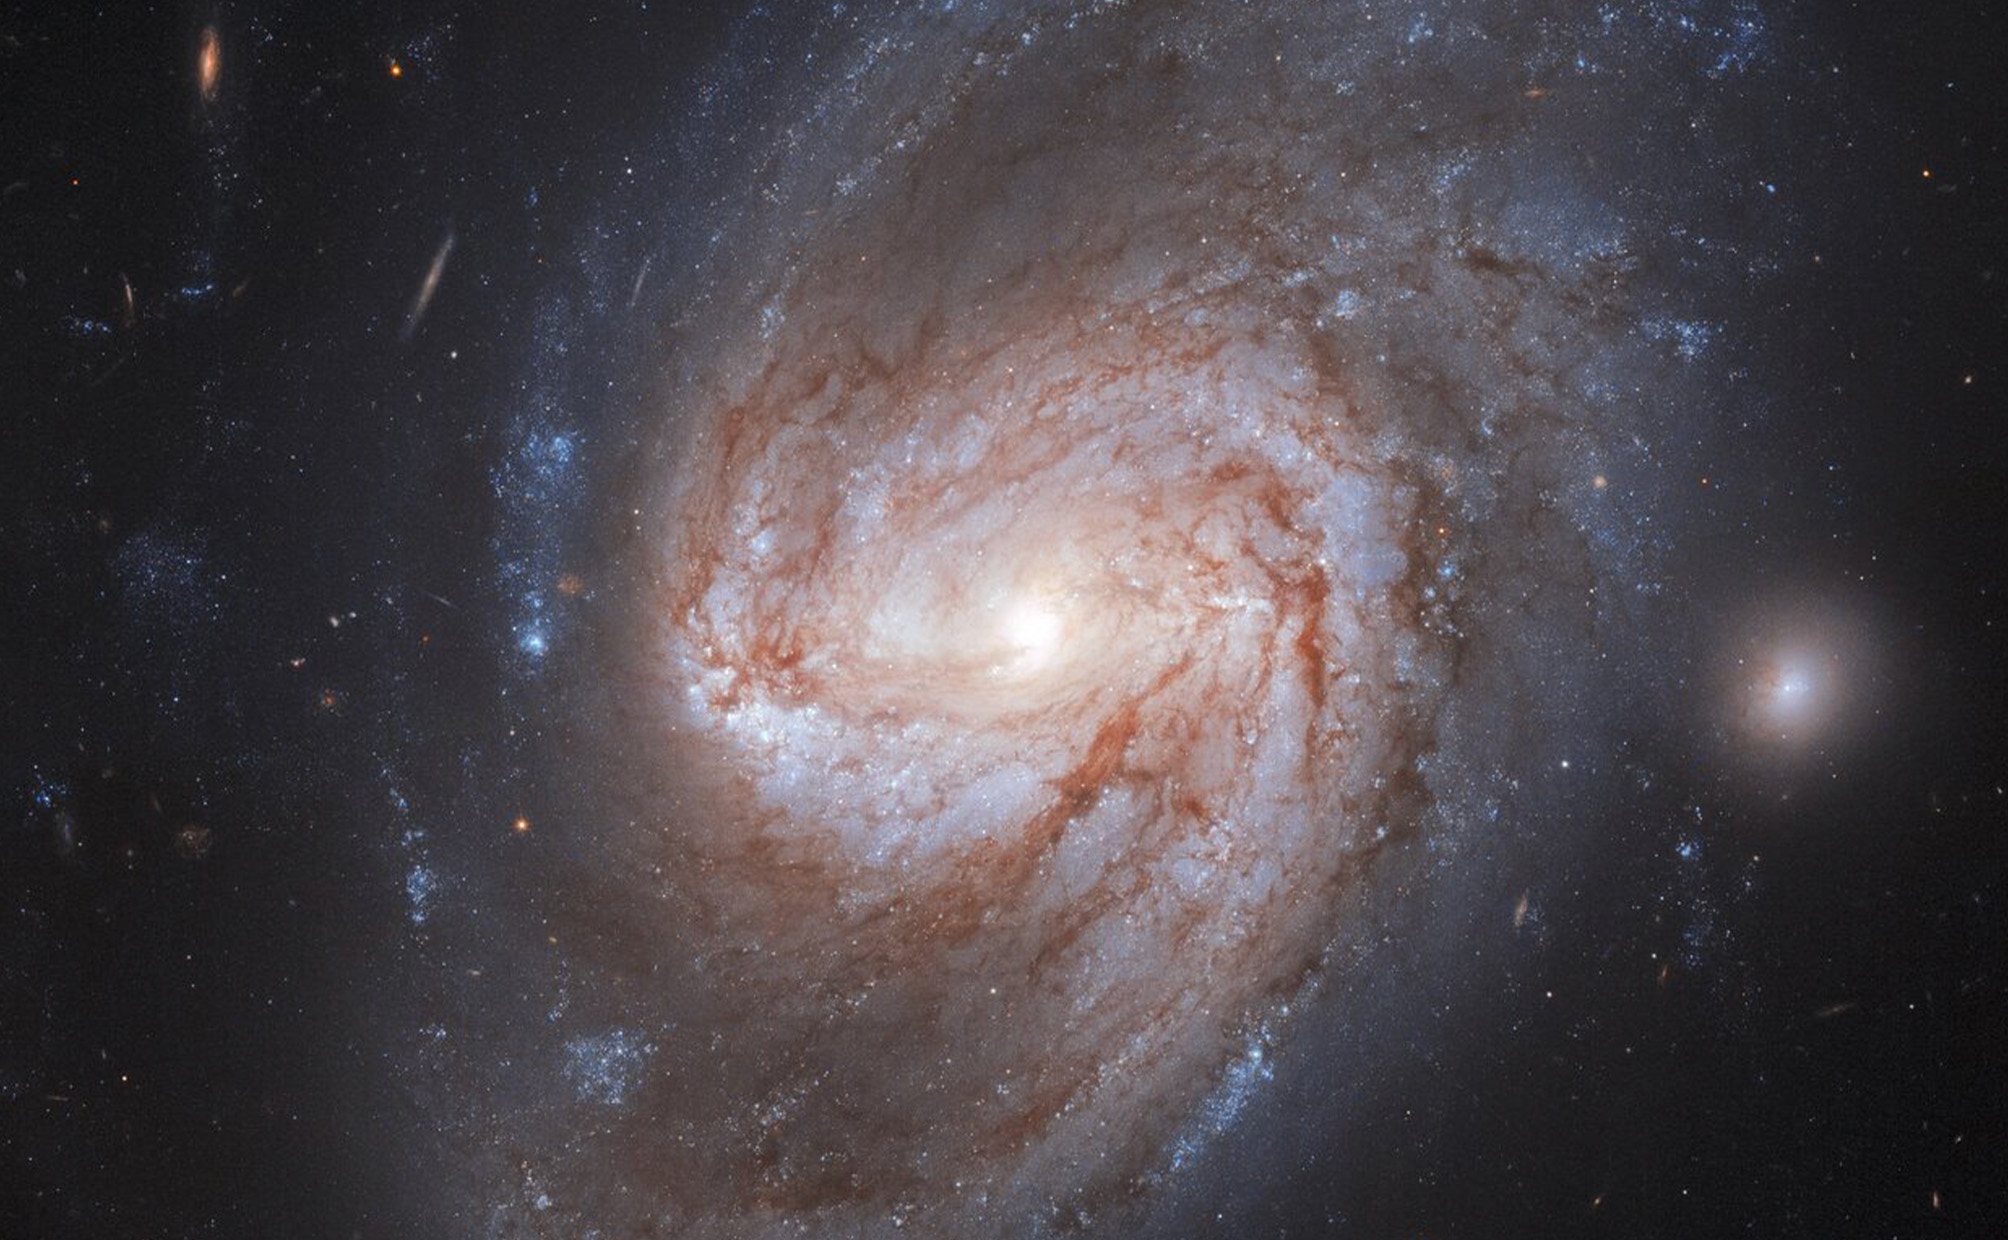 NGC 3583 é uma galáxia espiral barrada, localizada a 98 milhões de anos-luz da Via Láctea, na direção da Constelação da Ursa Maior. Duas supernovas foram identificadas nela, a primeira em 1975 e outra, mais recentemente, em 2015. Essas explosões evoluíram de dois sistemas estelares binários independentes. Em ambos os casos, o remanescente de uma estrela parecida com o Sol, que recebe o nome de anã branca, estava coletando material de sua estrela companheira. Alimentando-se de sua parceira, a anã branca atingiu sua massa máxima, entrando em colapso para explodir em uma brilhante supernova